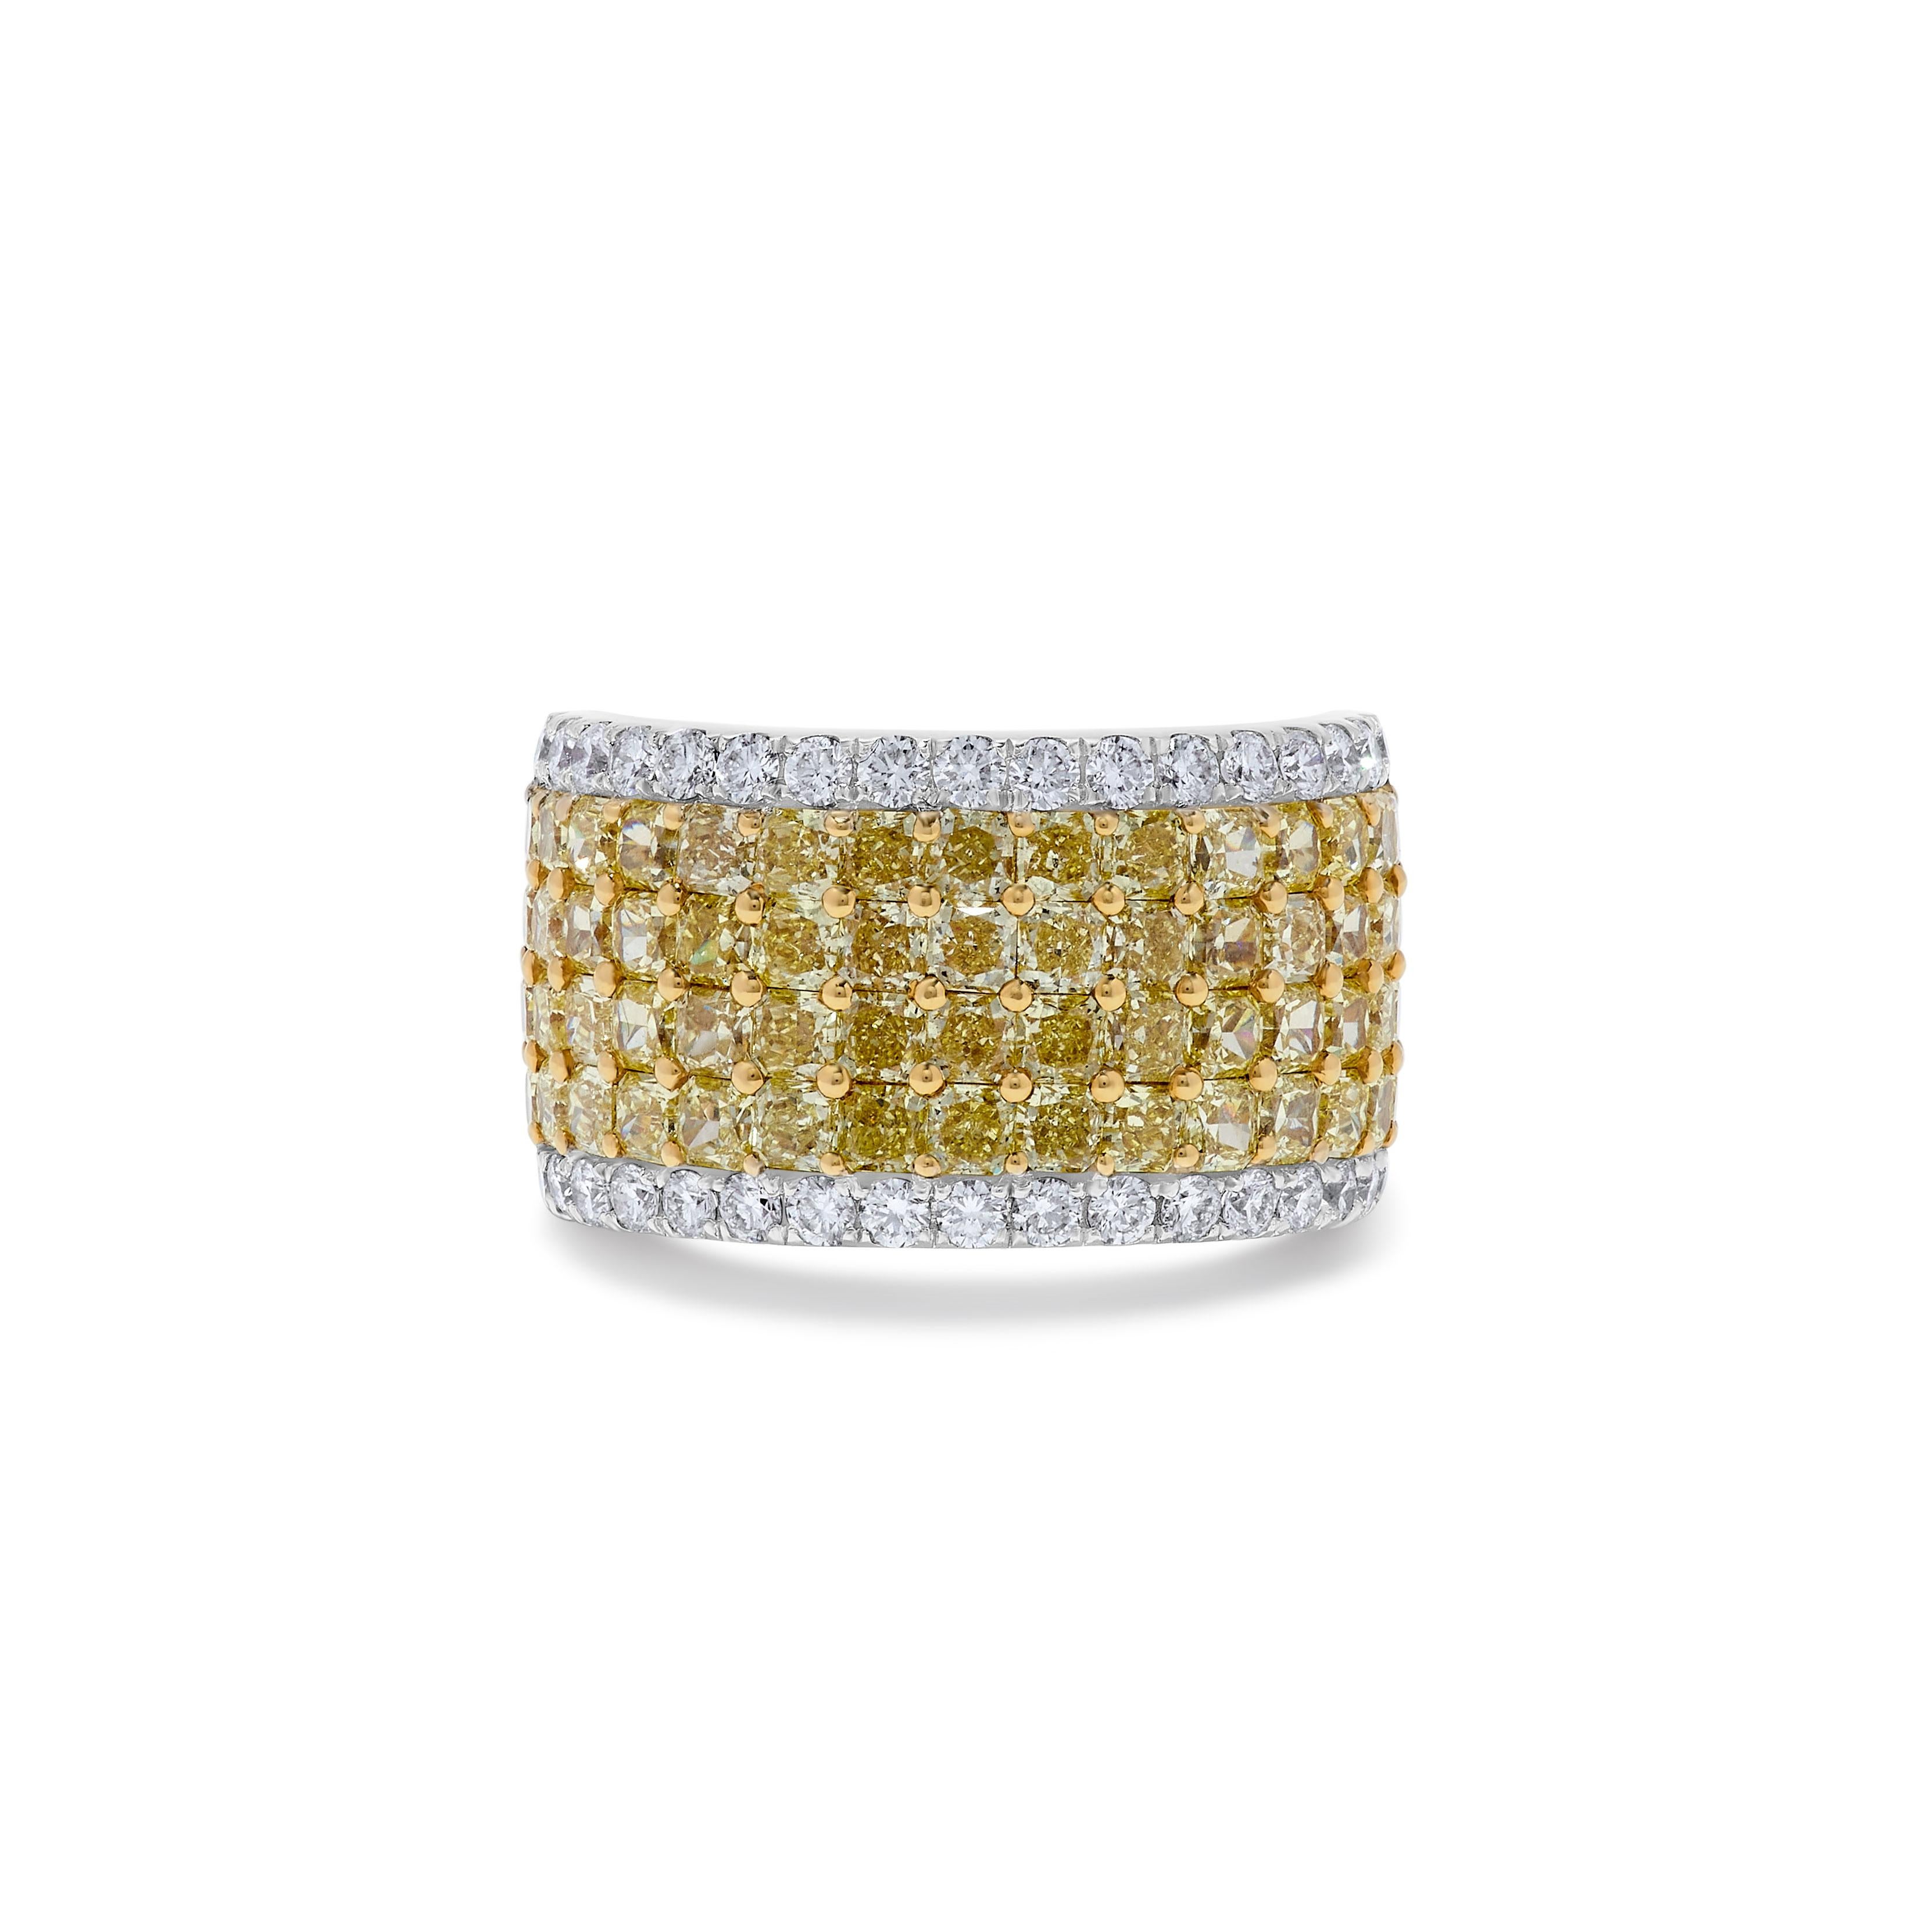 Le bracelet classique en diamants de Raregemworld. Montée dans une magnifique monture en or jaune et blanc 18 carats avec des diamants jaunes de taille rayonnante naturelle complétés par des diamants blancs de taille ronde naturelle. Cette bague est